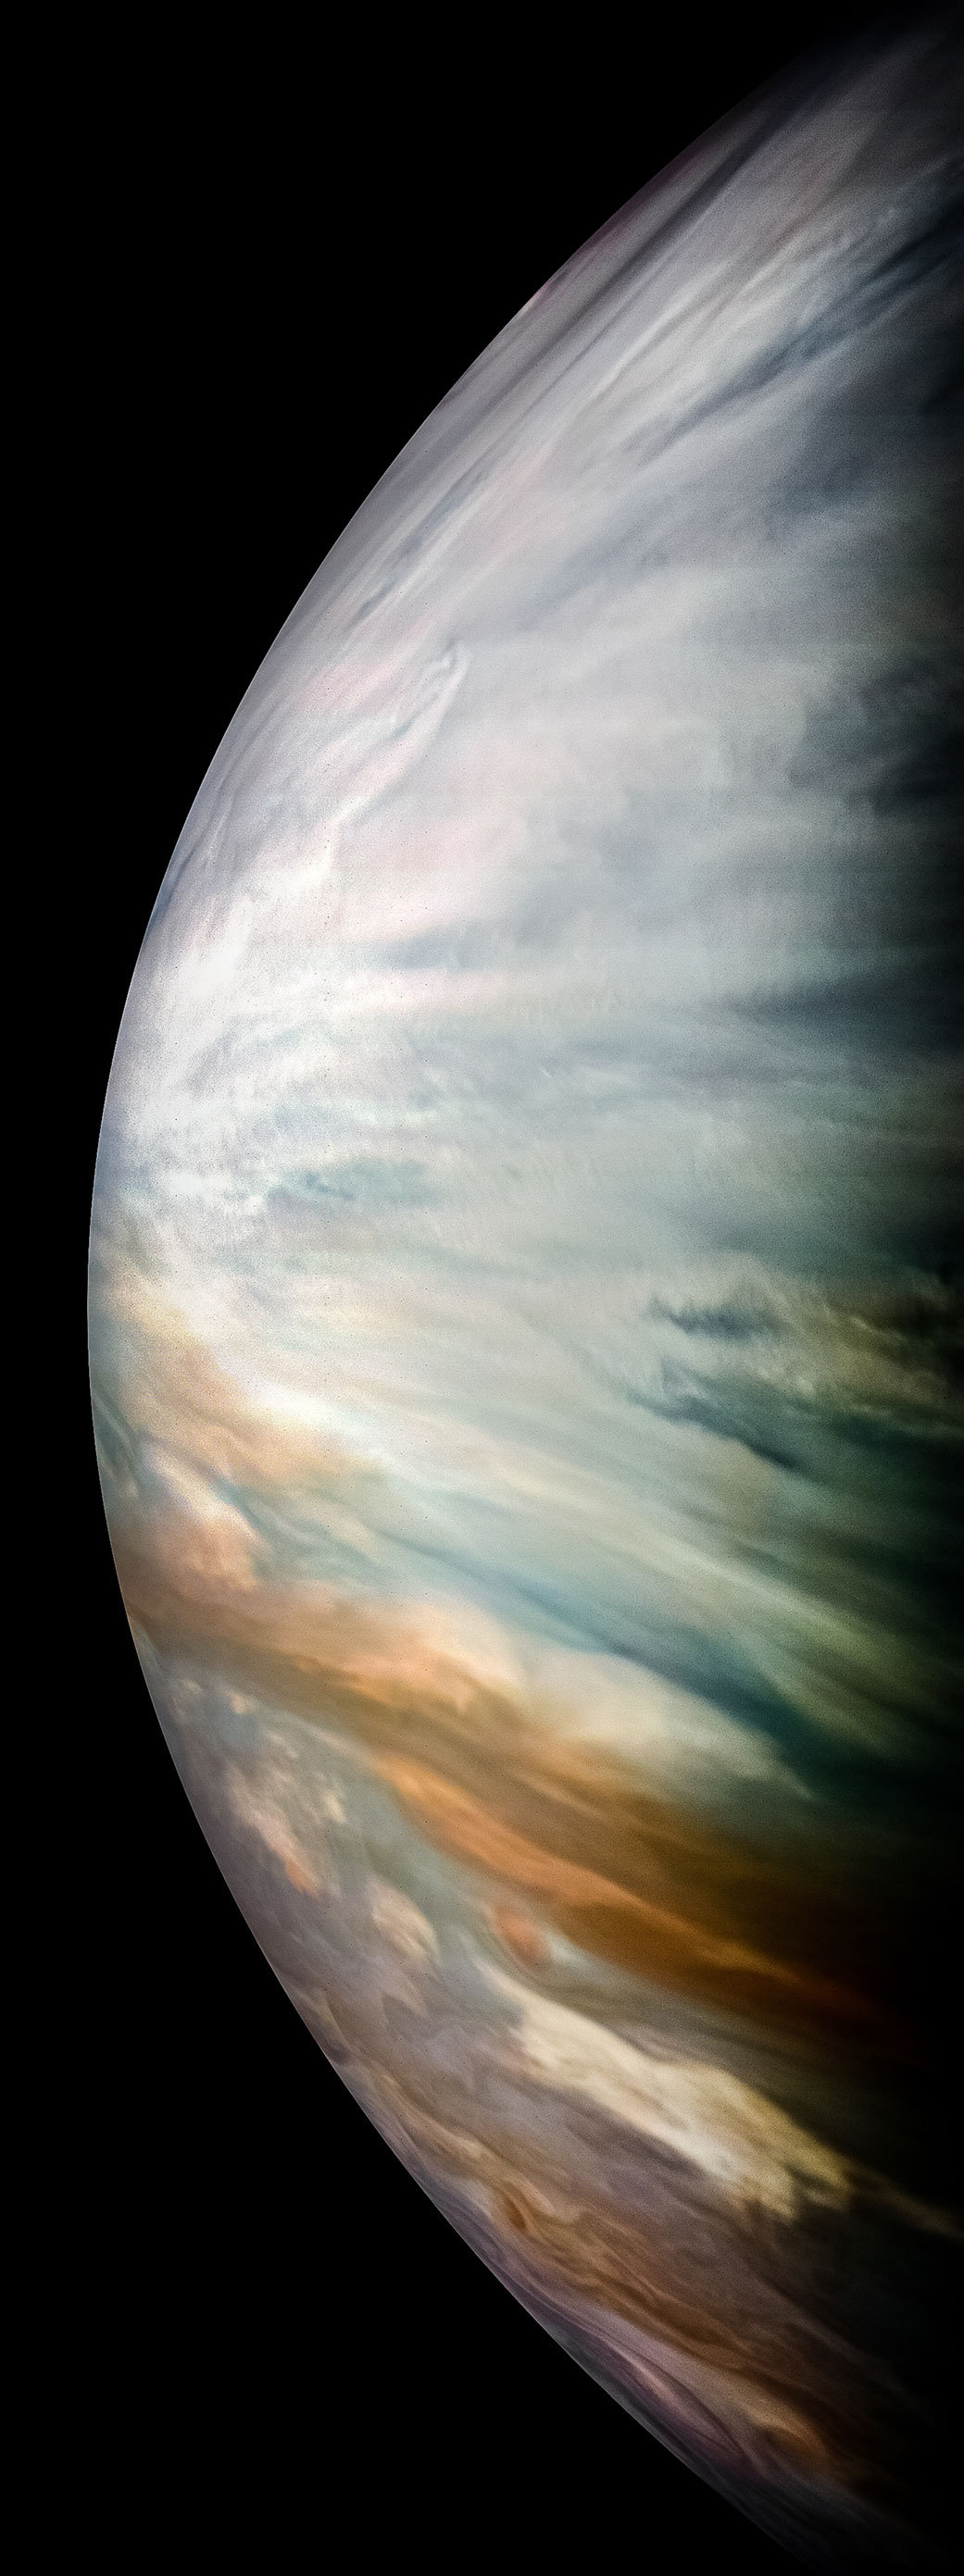 木星之水几何，孰可测之？结果何知？